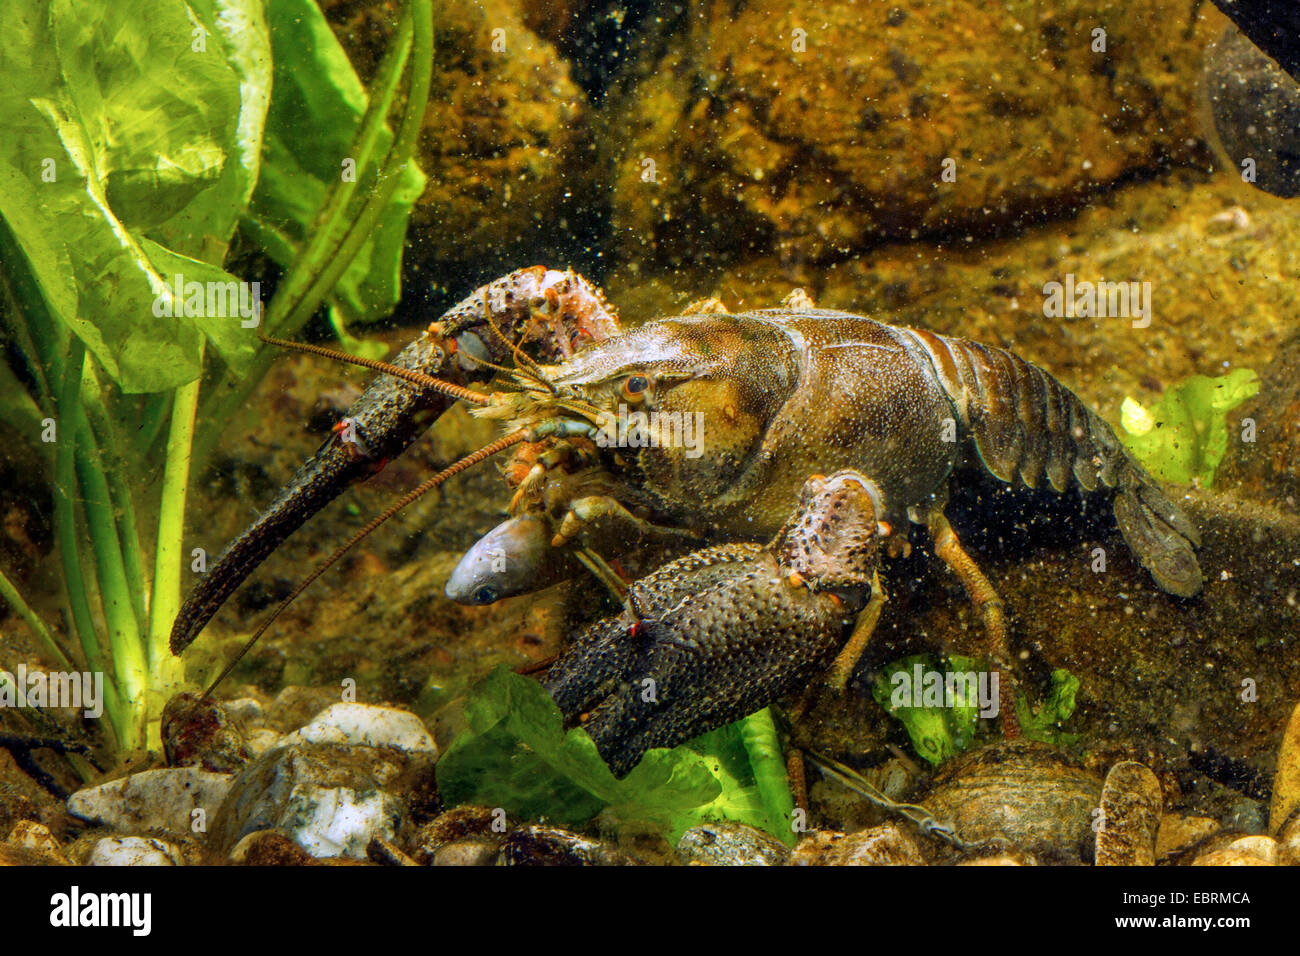 Noble cangrejo de río (Astacus astacus), se alimenta de un muerto como bitterling ciprinícolas, Alemania Foto de stock